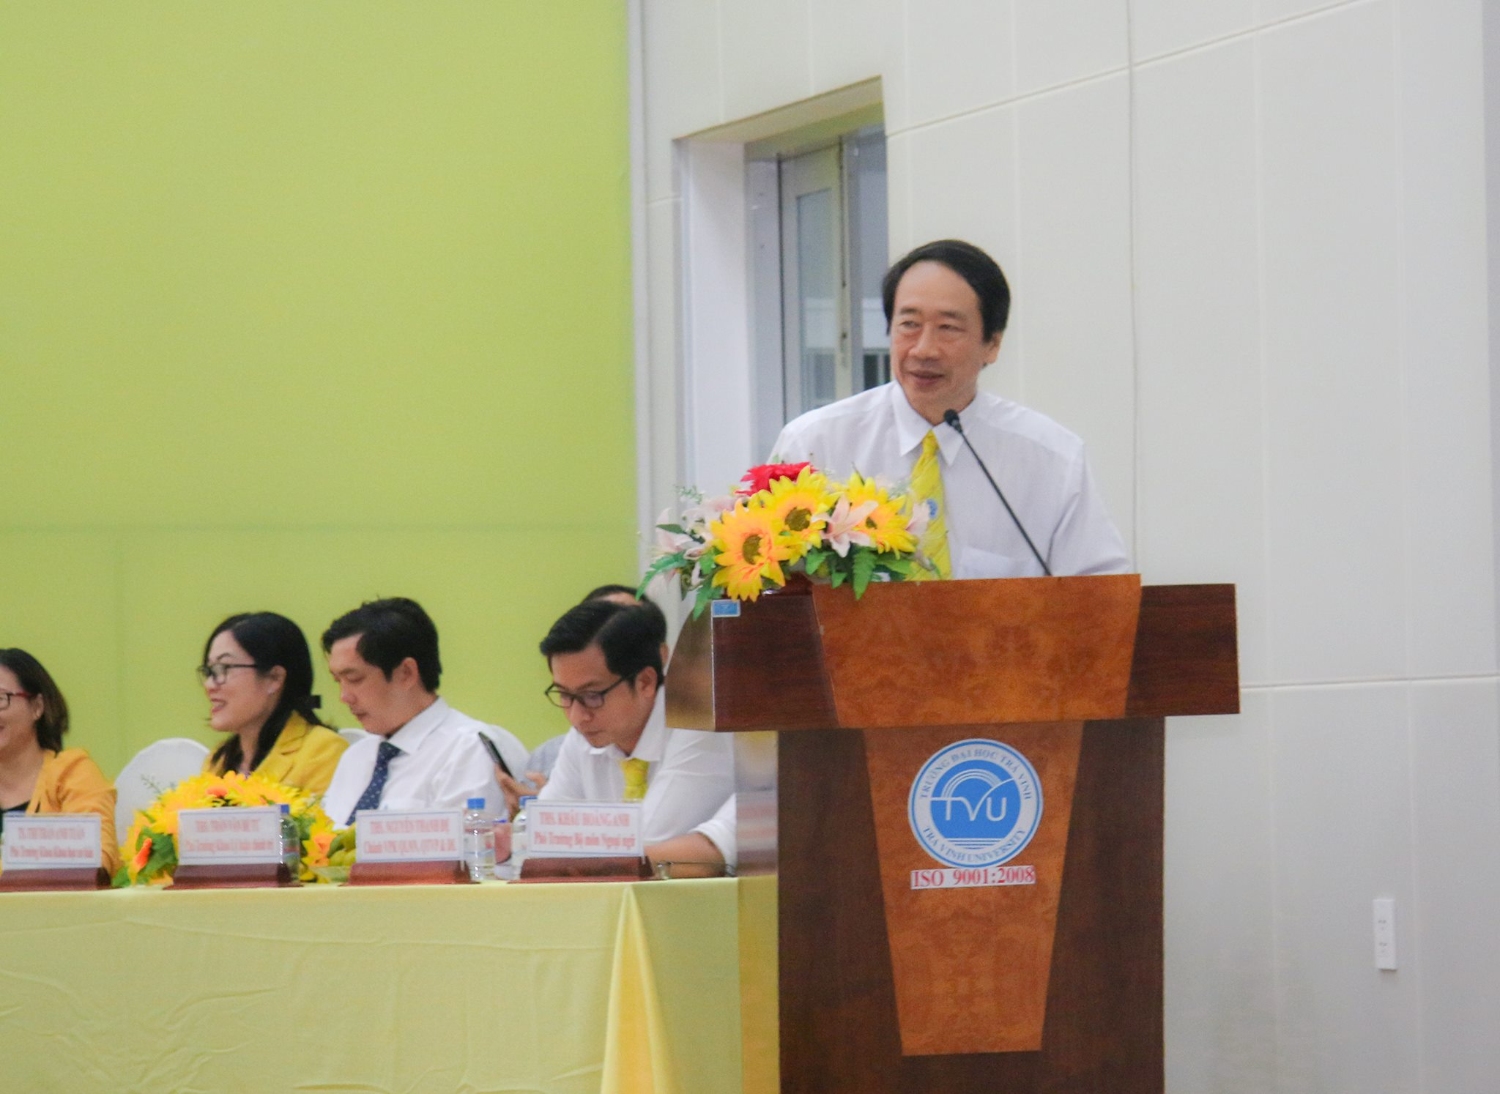 Khanh Phạm Tiet parle dans un microphone sur un podium.